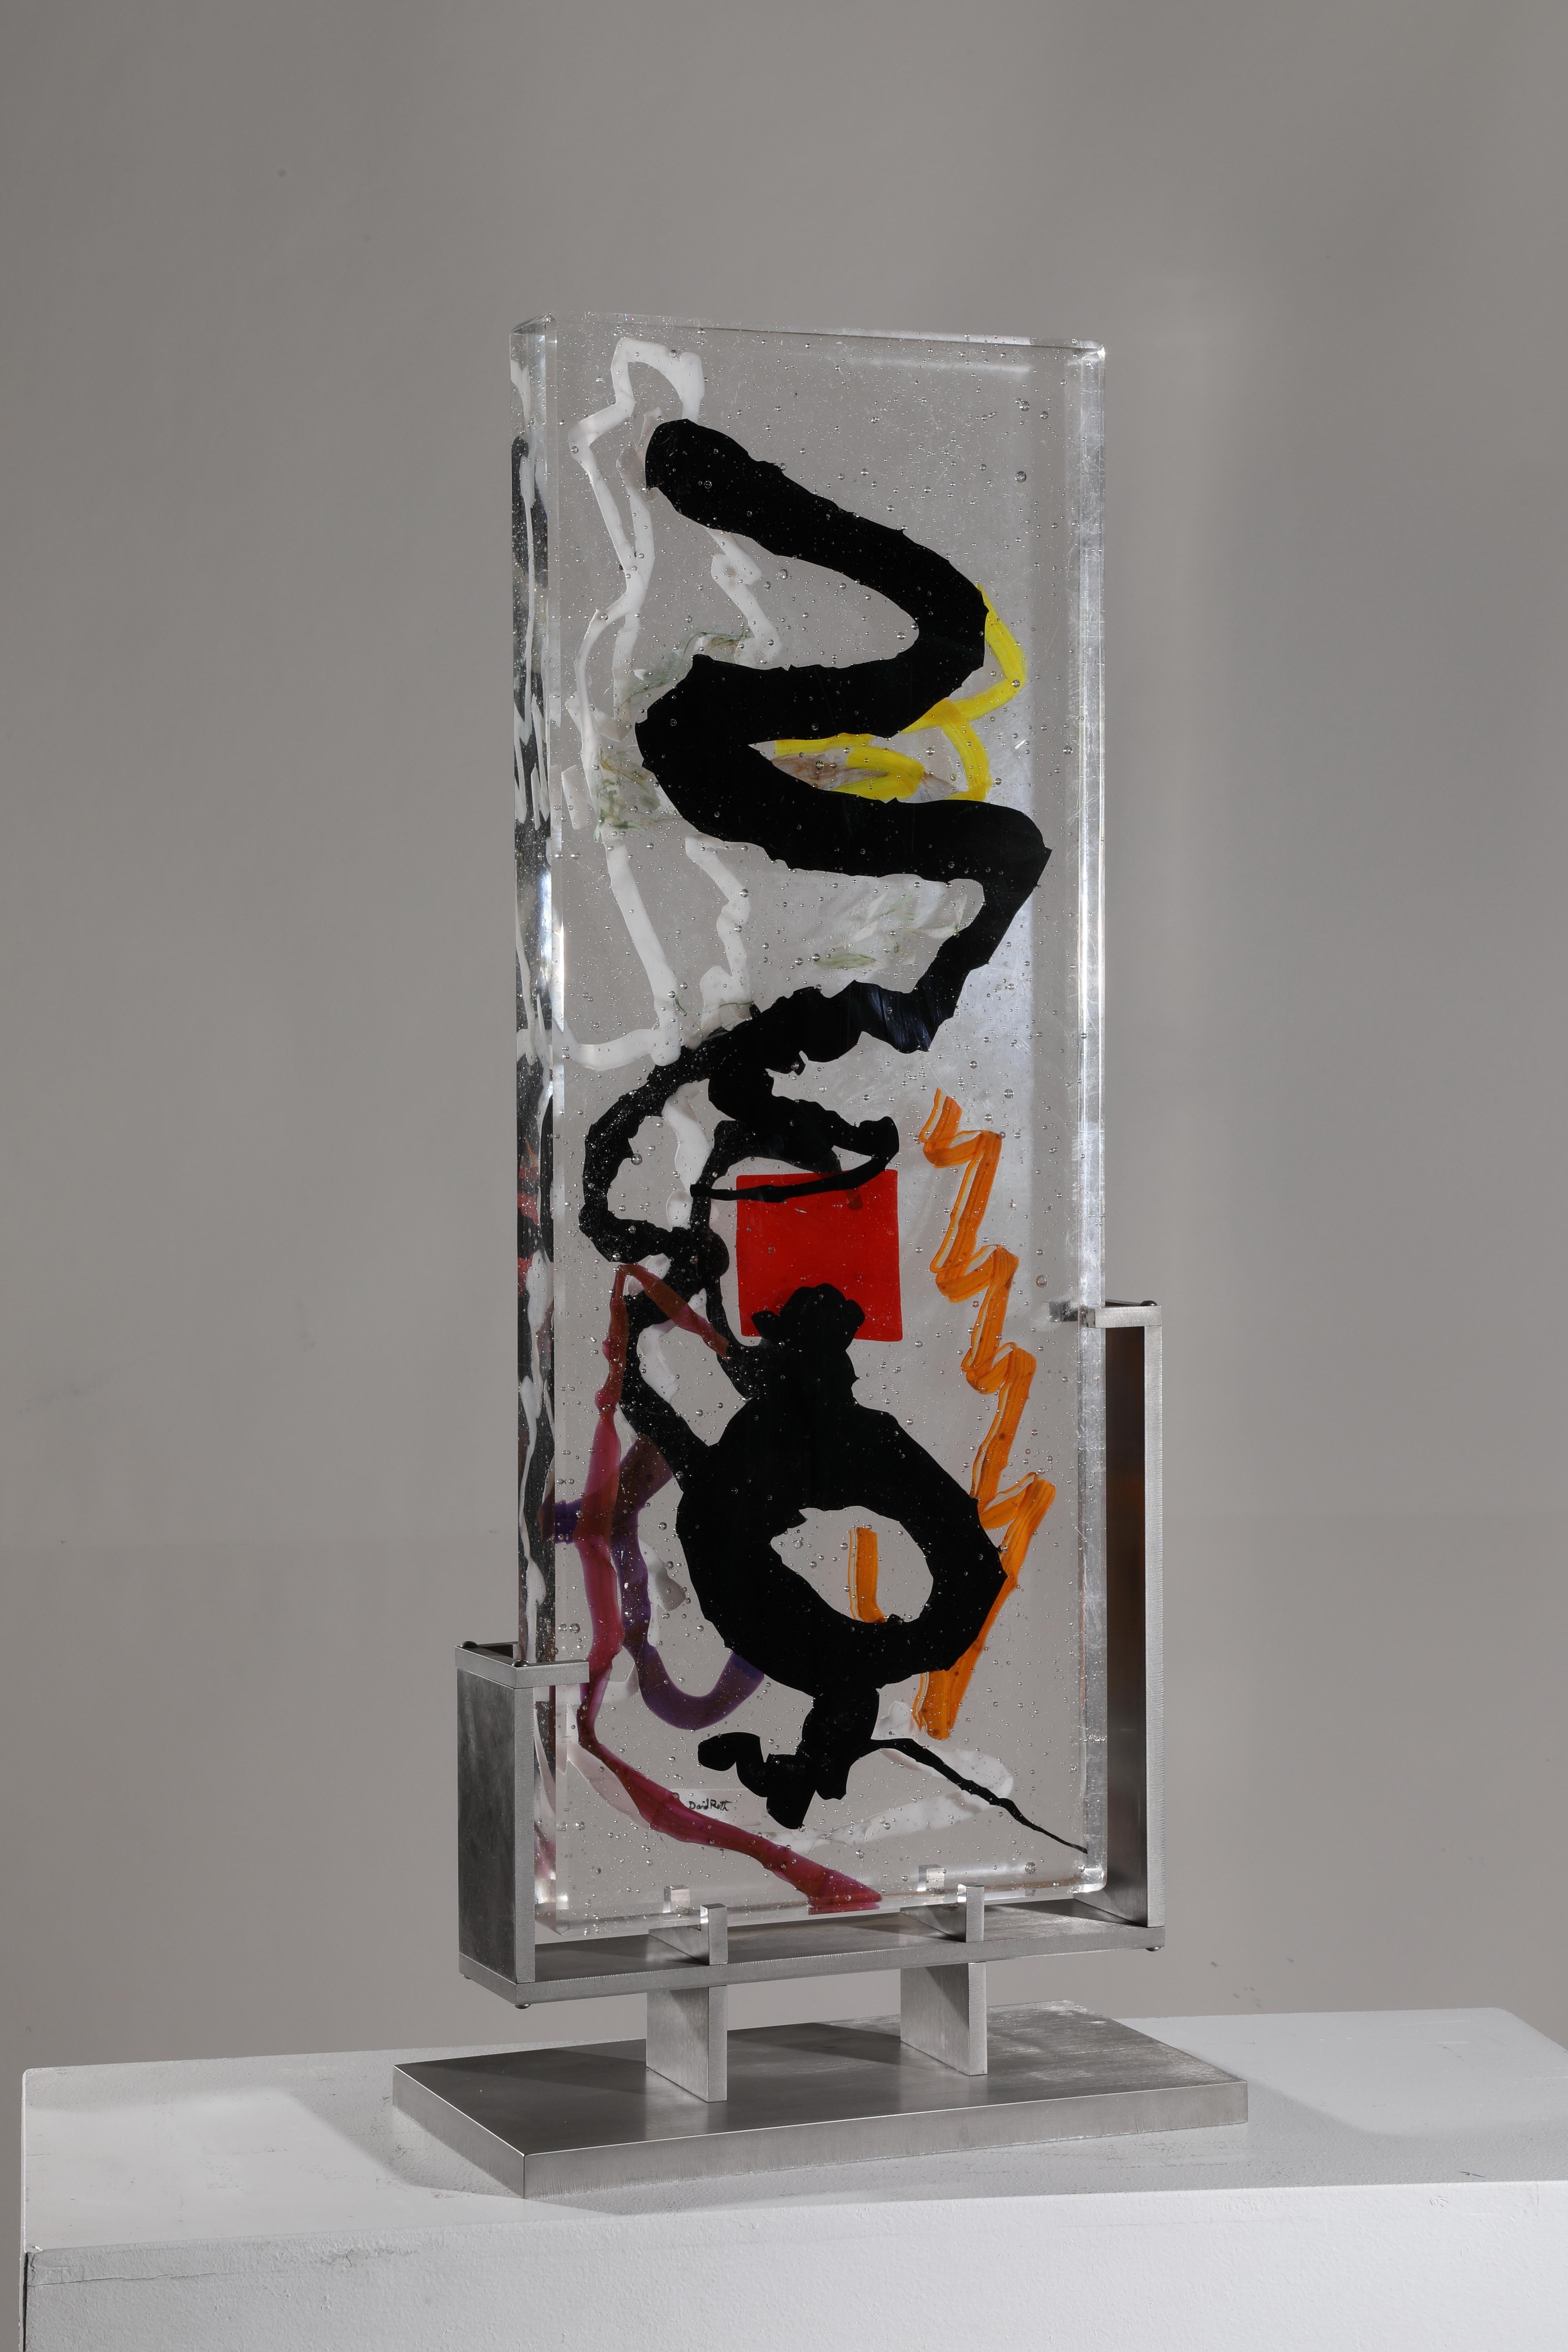 Rapota" est une sculpture abstraite contemporaine en verre coulé de David Ruth, issue de sa série Internal Space. Il s'agit de la dernière sculpture achevée de cette série. Elle présente des formations picturales en verre appelées traînées. Ces